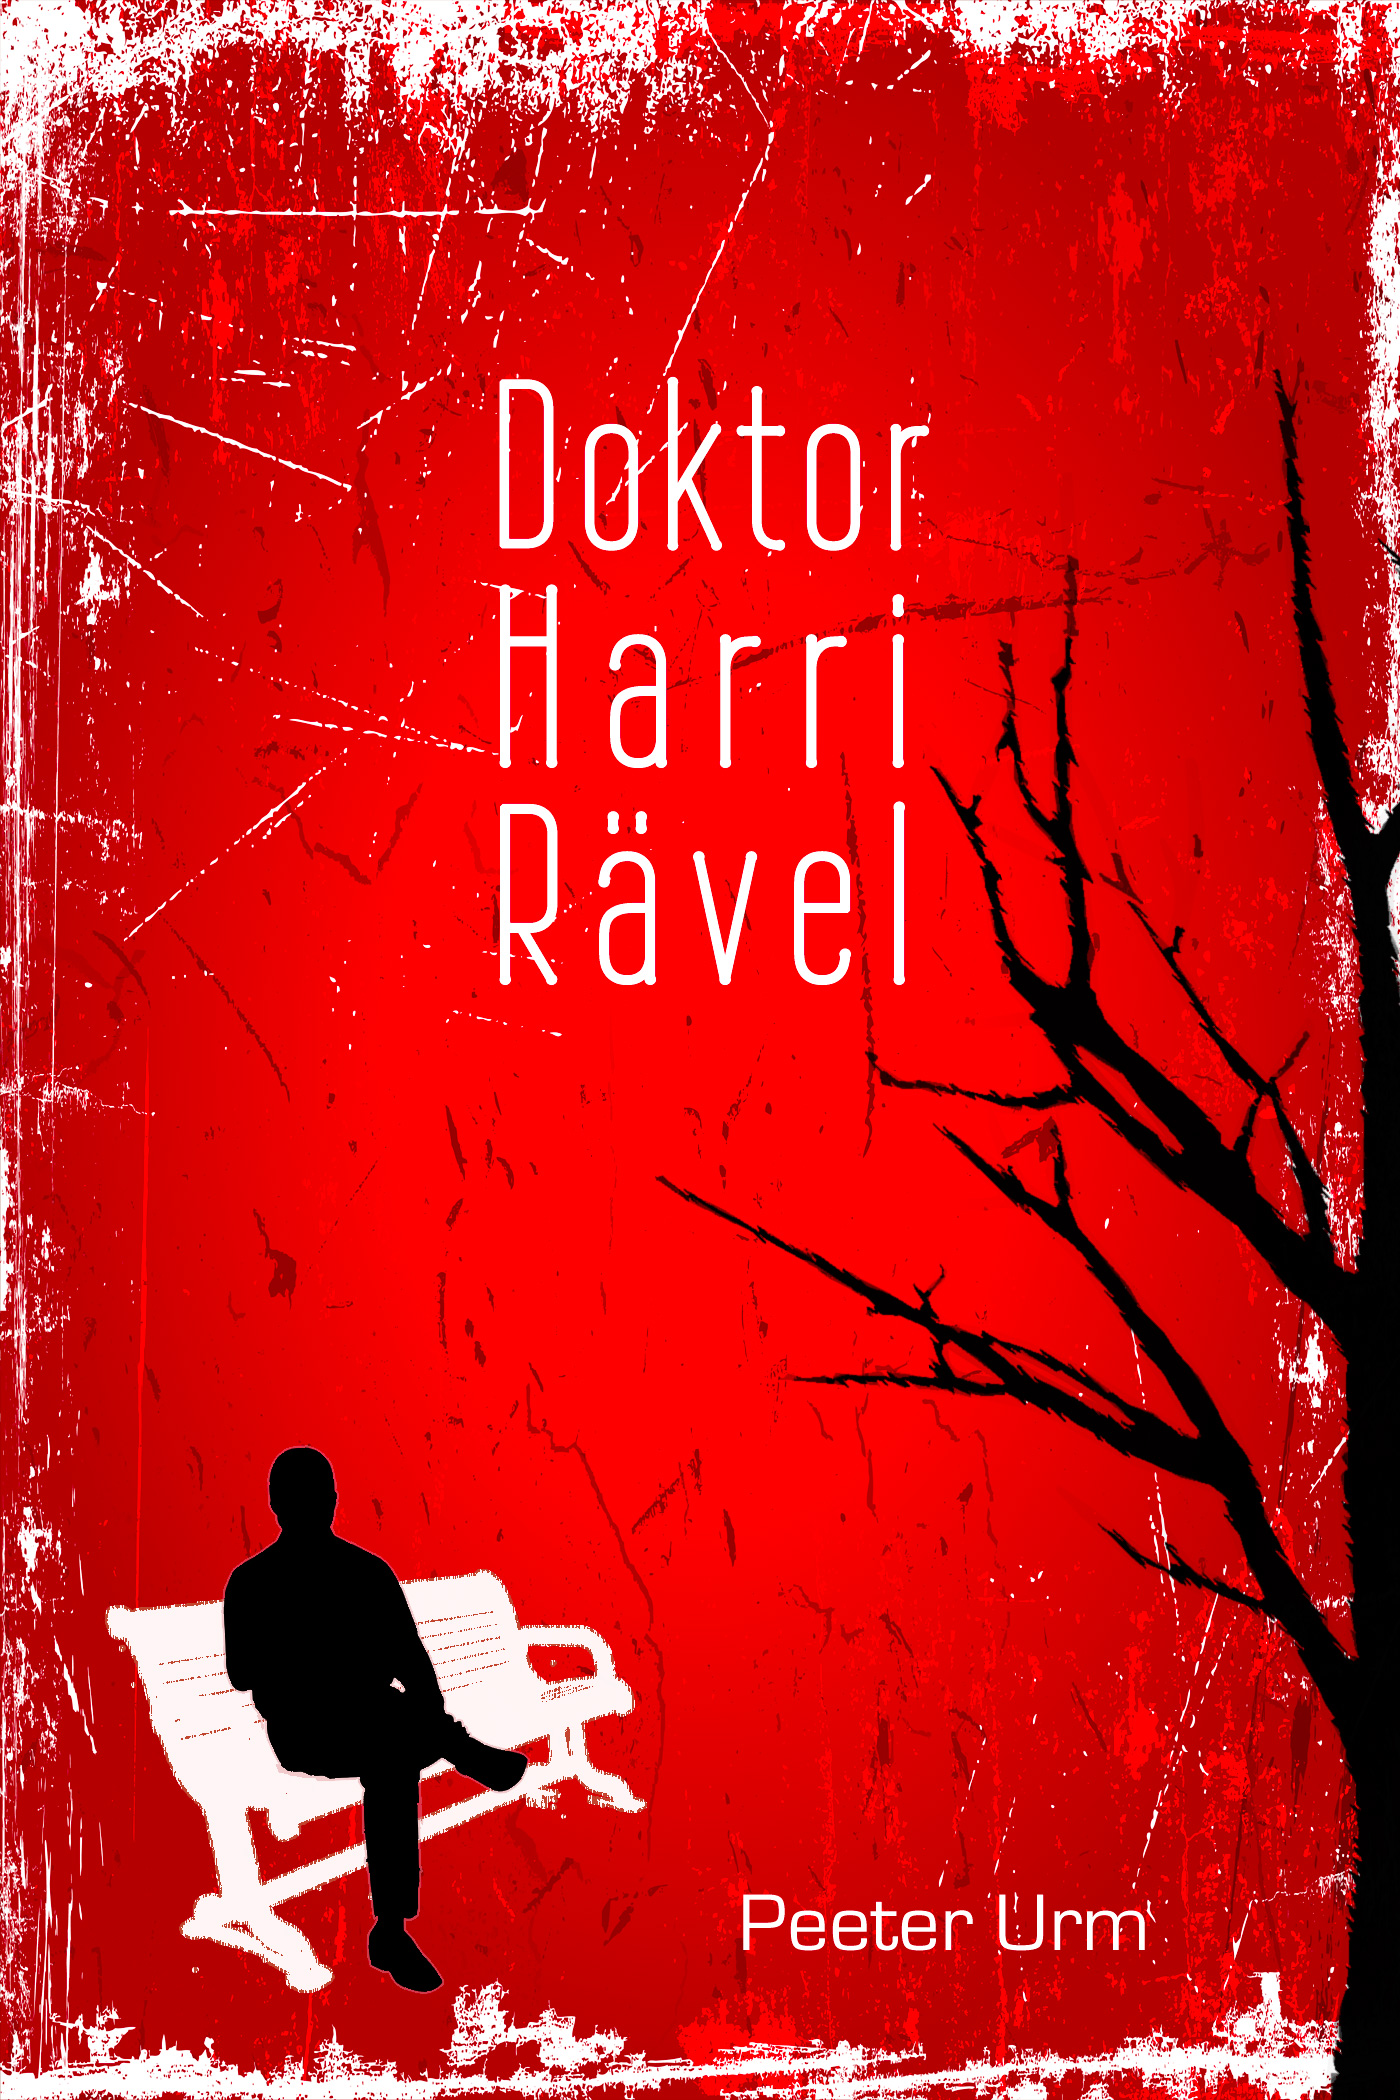 Книга Doktor Harri Rävel из серии , созданная Peeter Urm, может относится к жанру Зарубежная классика, Современная зарубежная литература, Зарубежные любовные романы. Стоимость электронной книги Doktor Harri Rävel с идентификатором 21187836 составляет 598.46 руб.